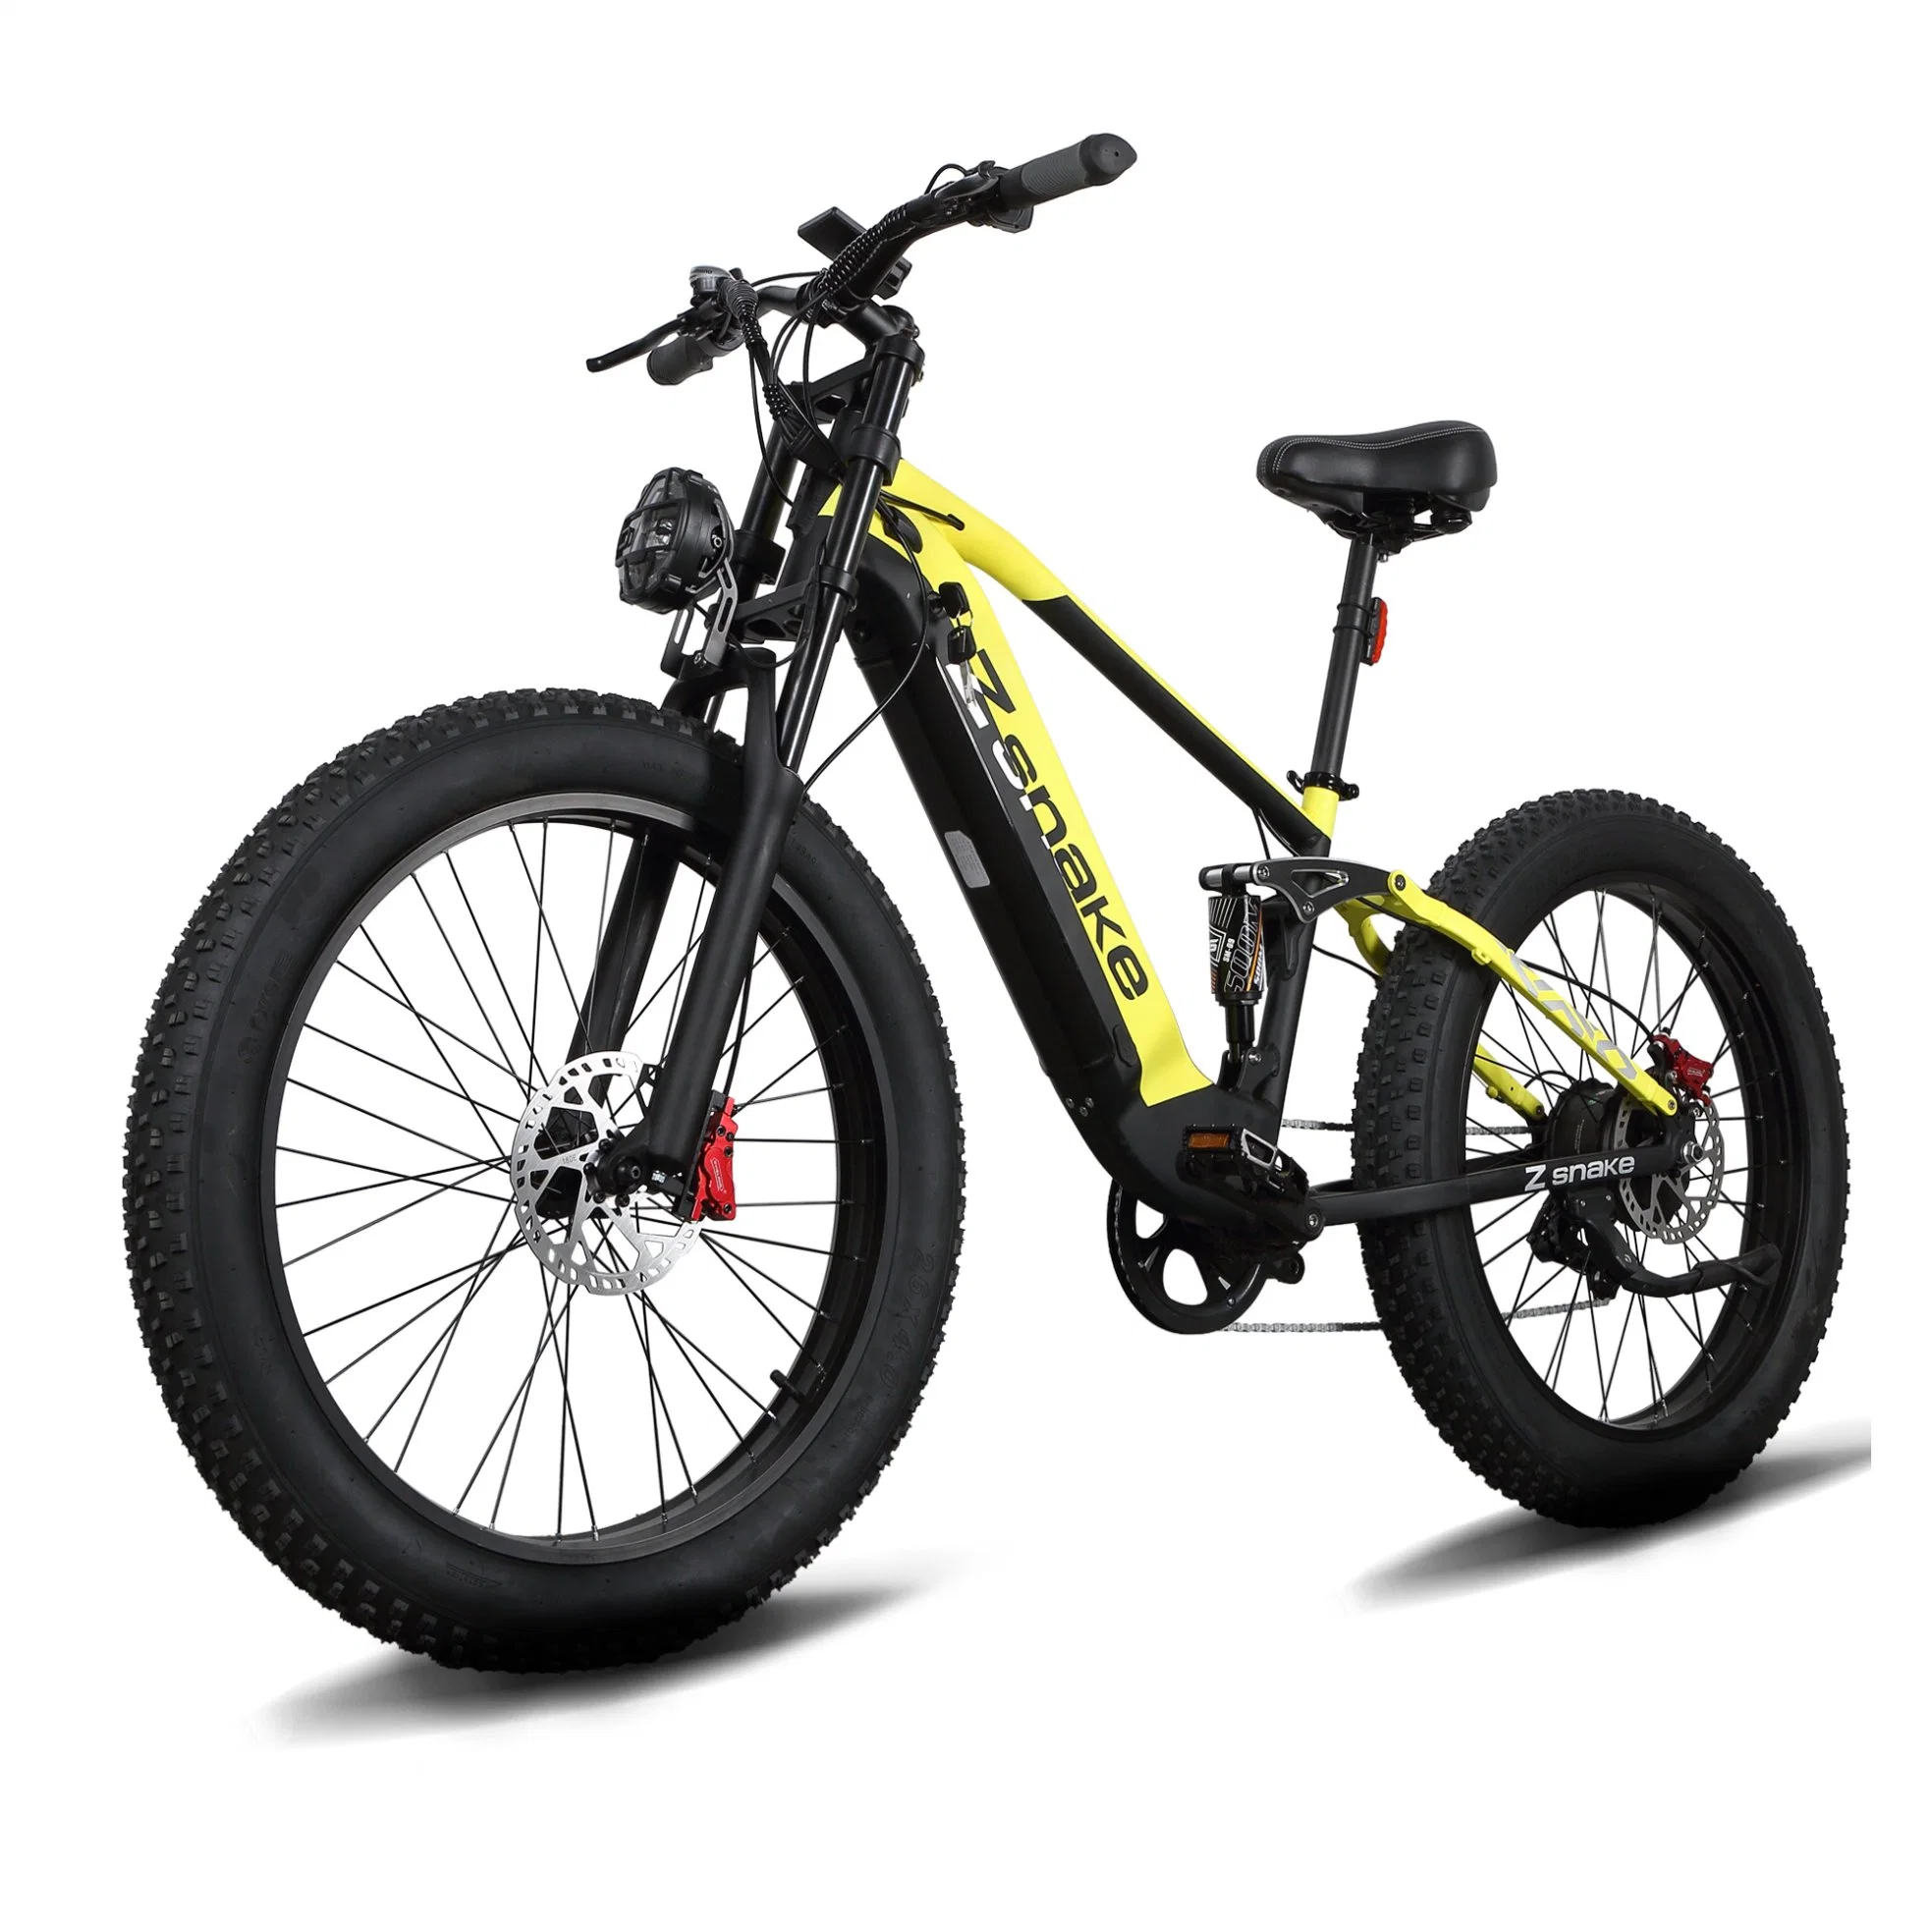 Zsnake высокое качество 750W электрический велосипед взрослых 30 миль в час из алюминиевого сплава с электроприводом на горных велосипедах 48V 20A